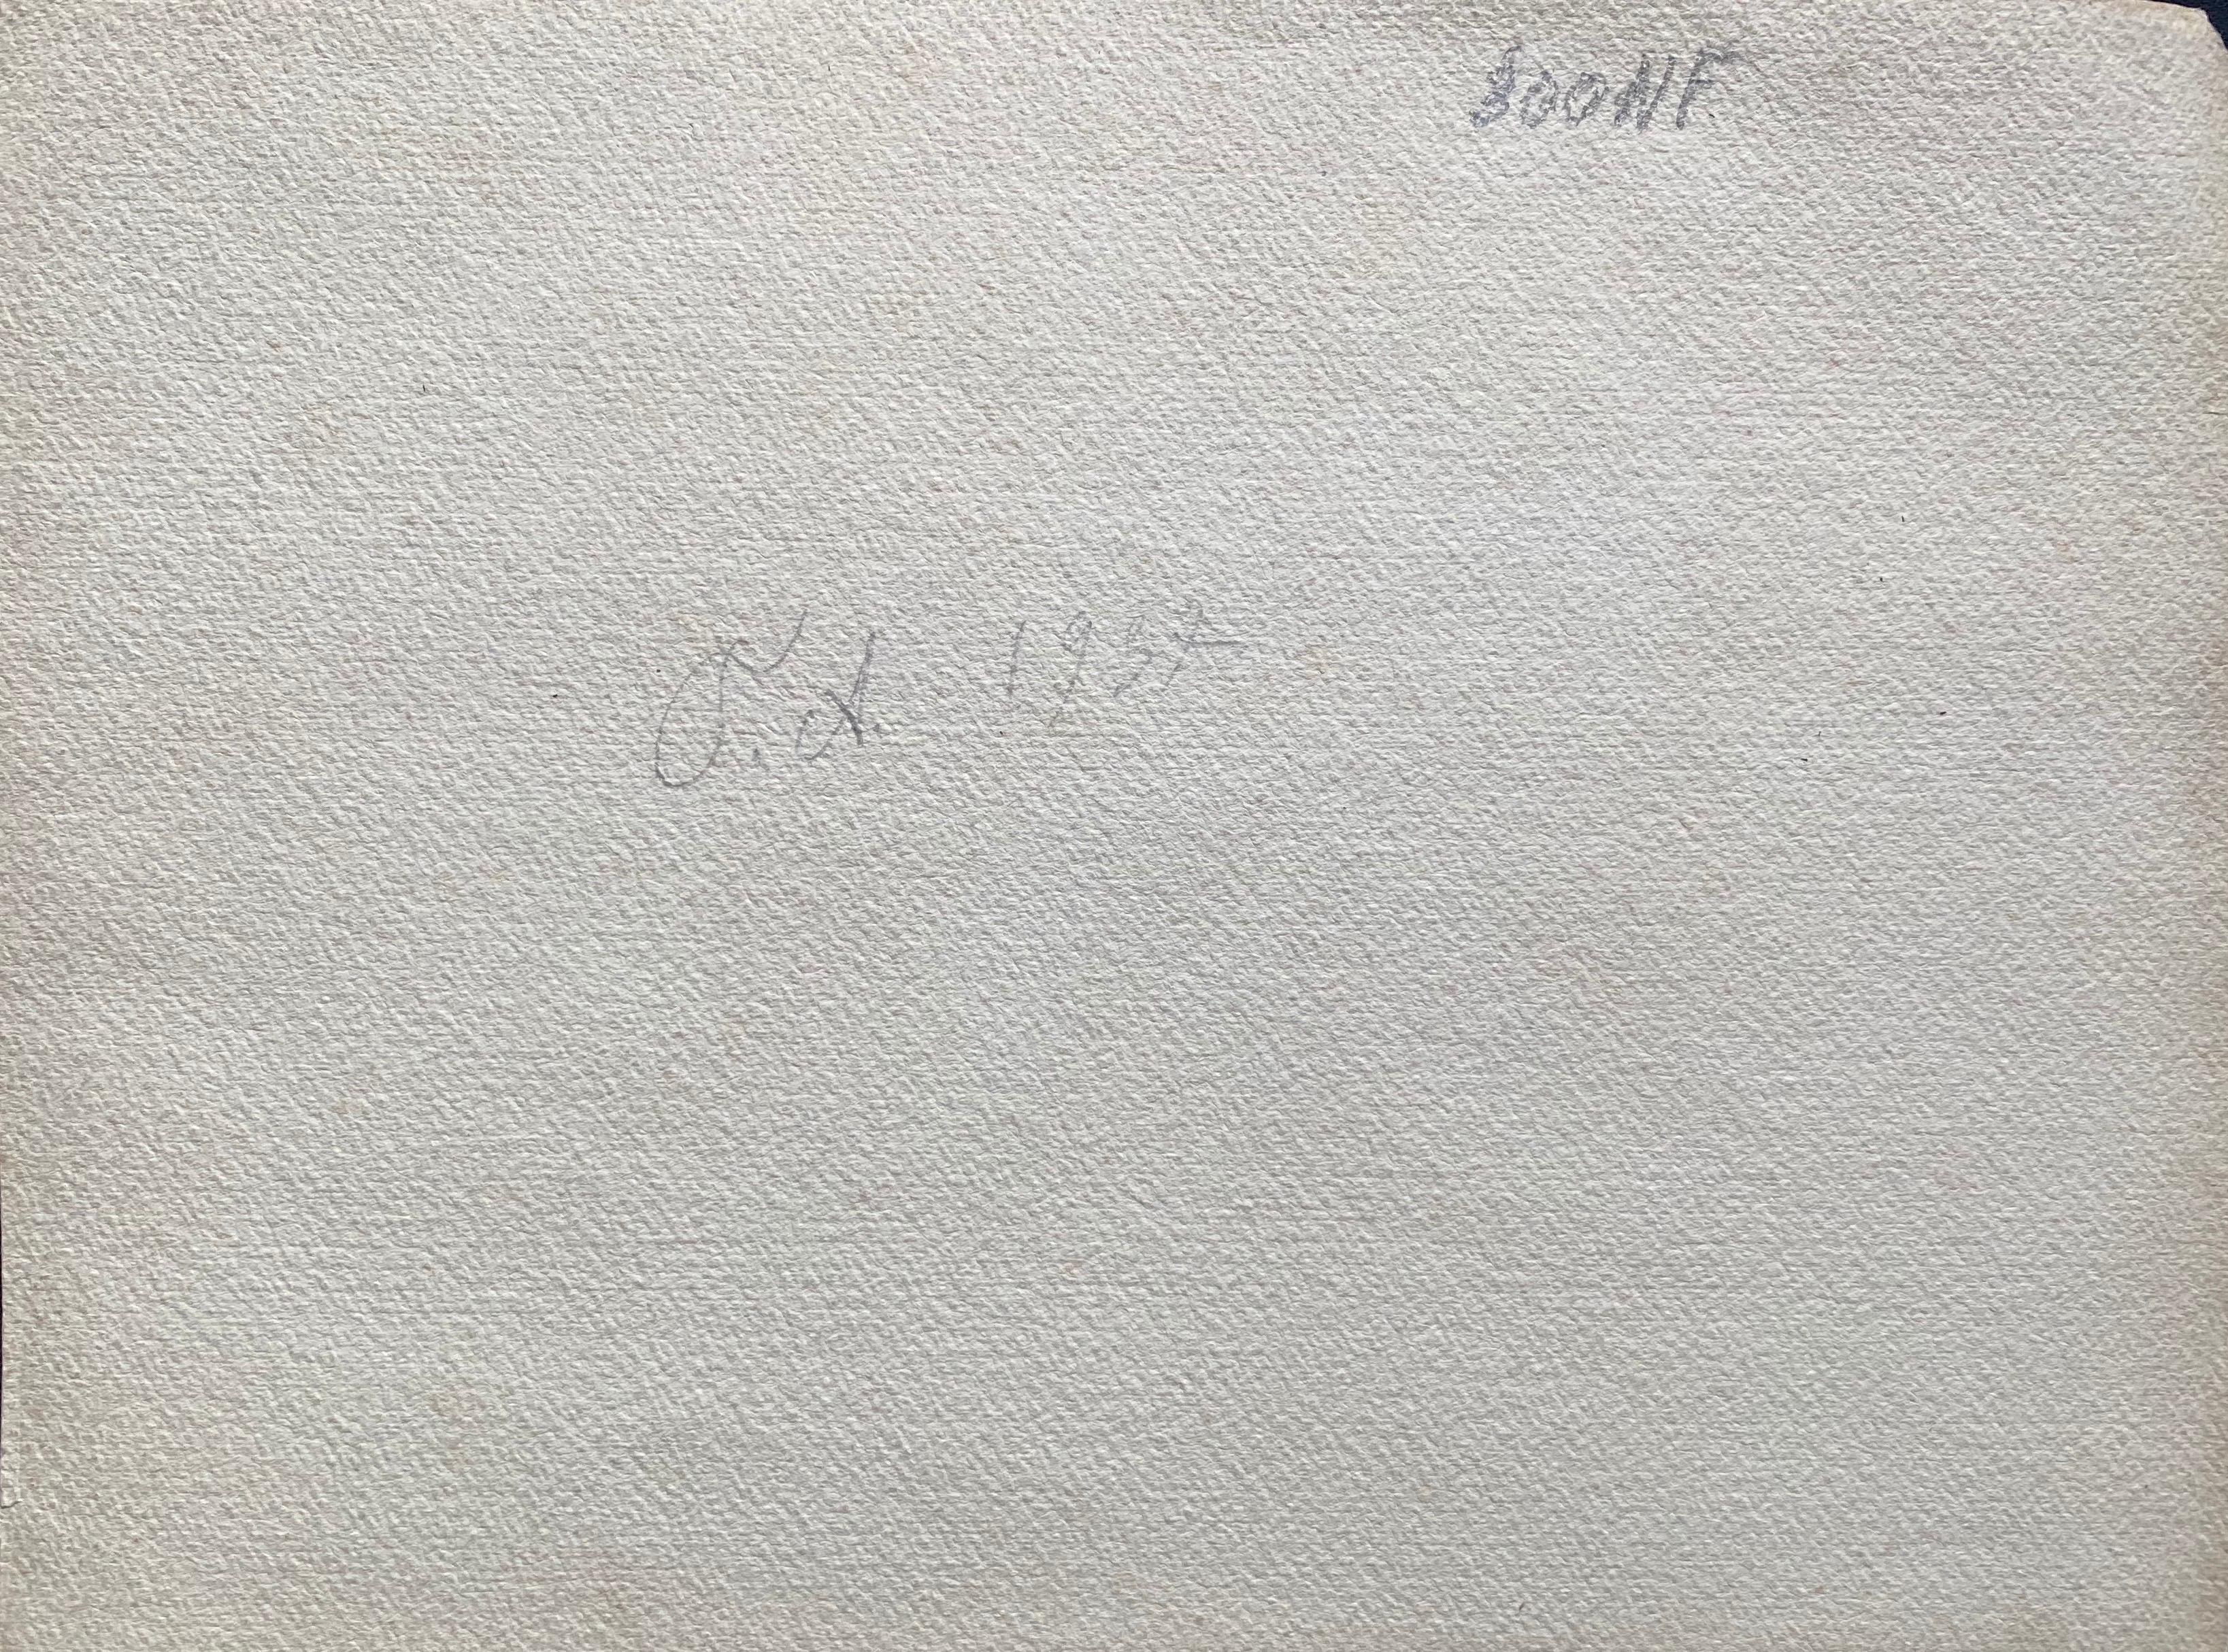 weintrauben
von Marie-Amelie Chautard-Carreau (Französisch, 19./20. Jahrhundert)
signiert unten rechts
aquarell auf Papier, ungerahmt

gemälde: 8 x 10,75 Zoll

Herrliches französisches Aquarell aus dem frühen 20. Jahrhundert, das dieses schöne